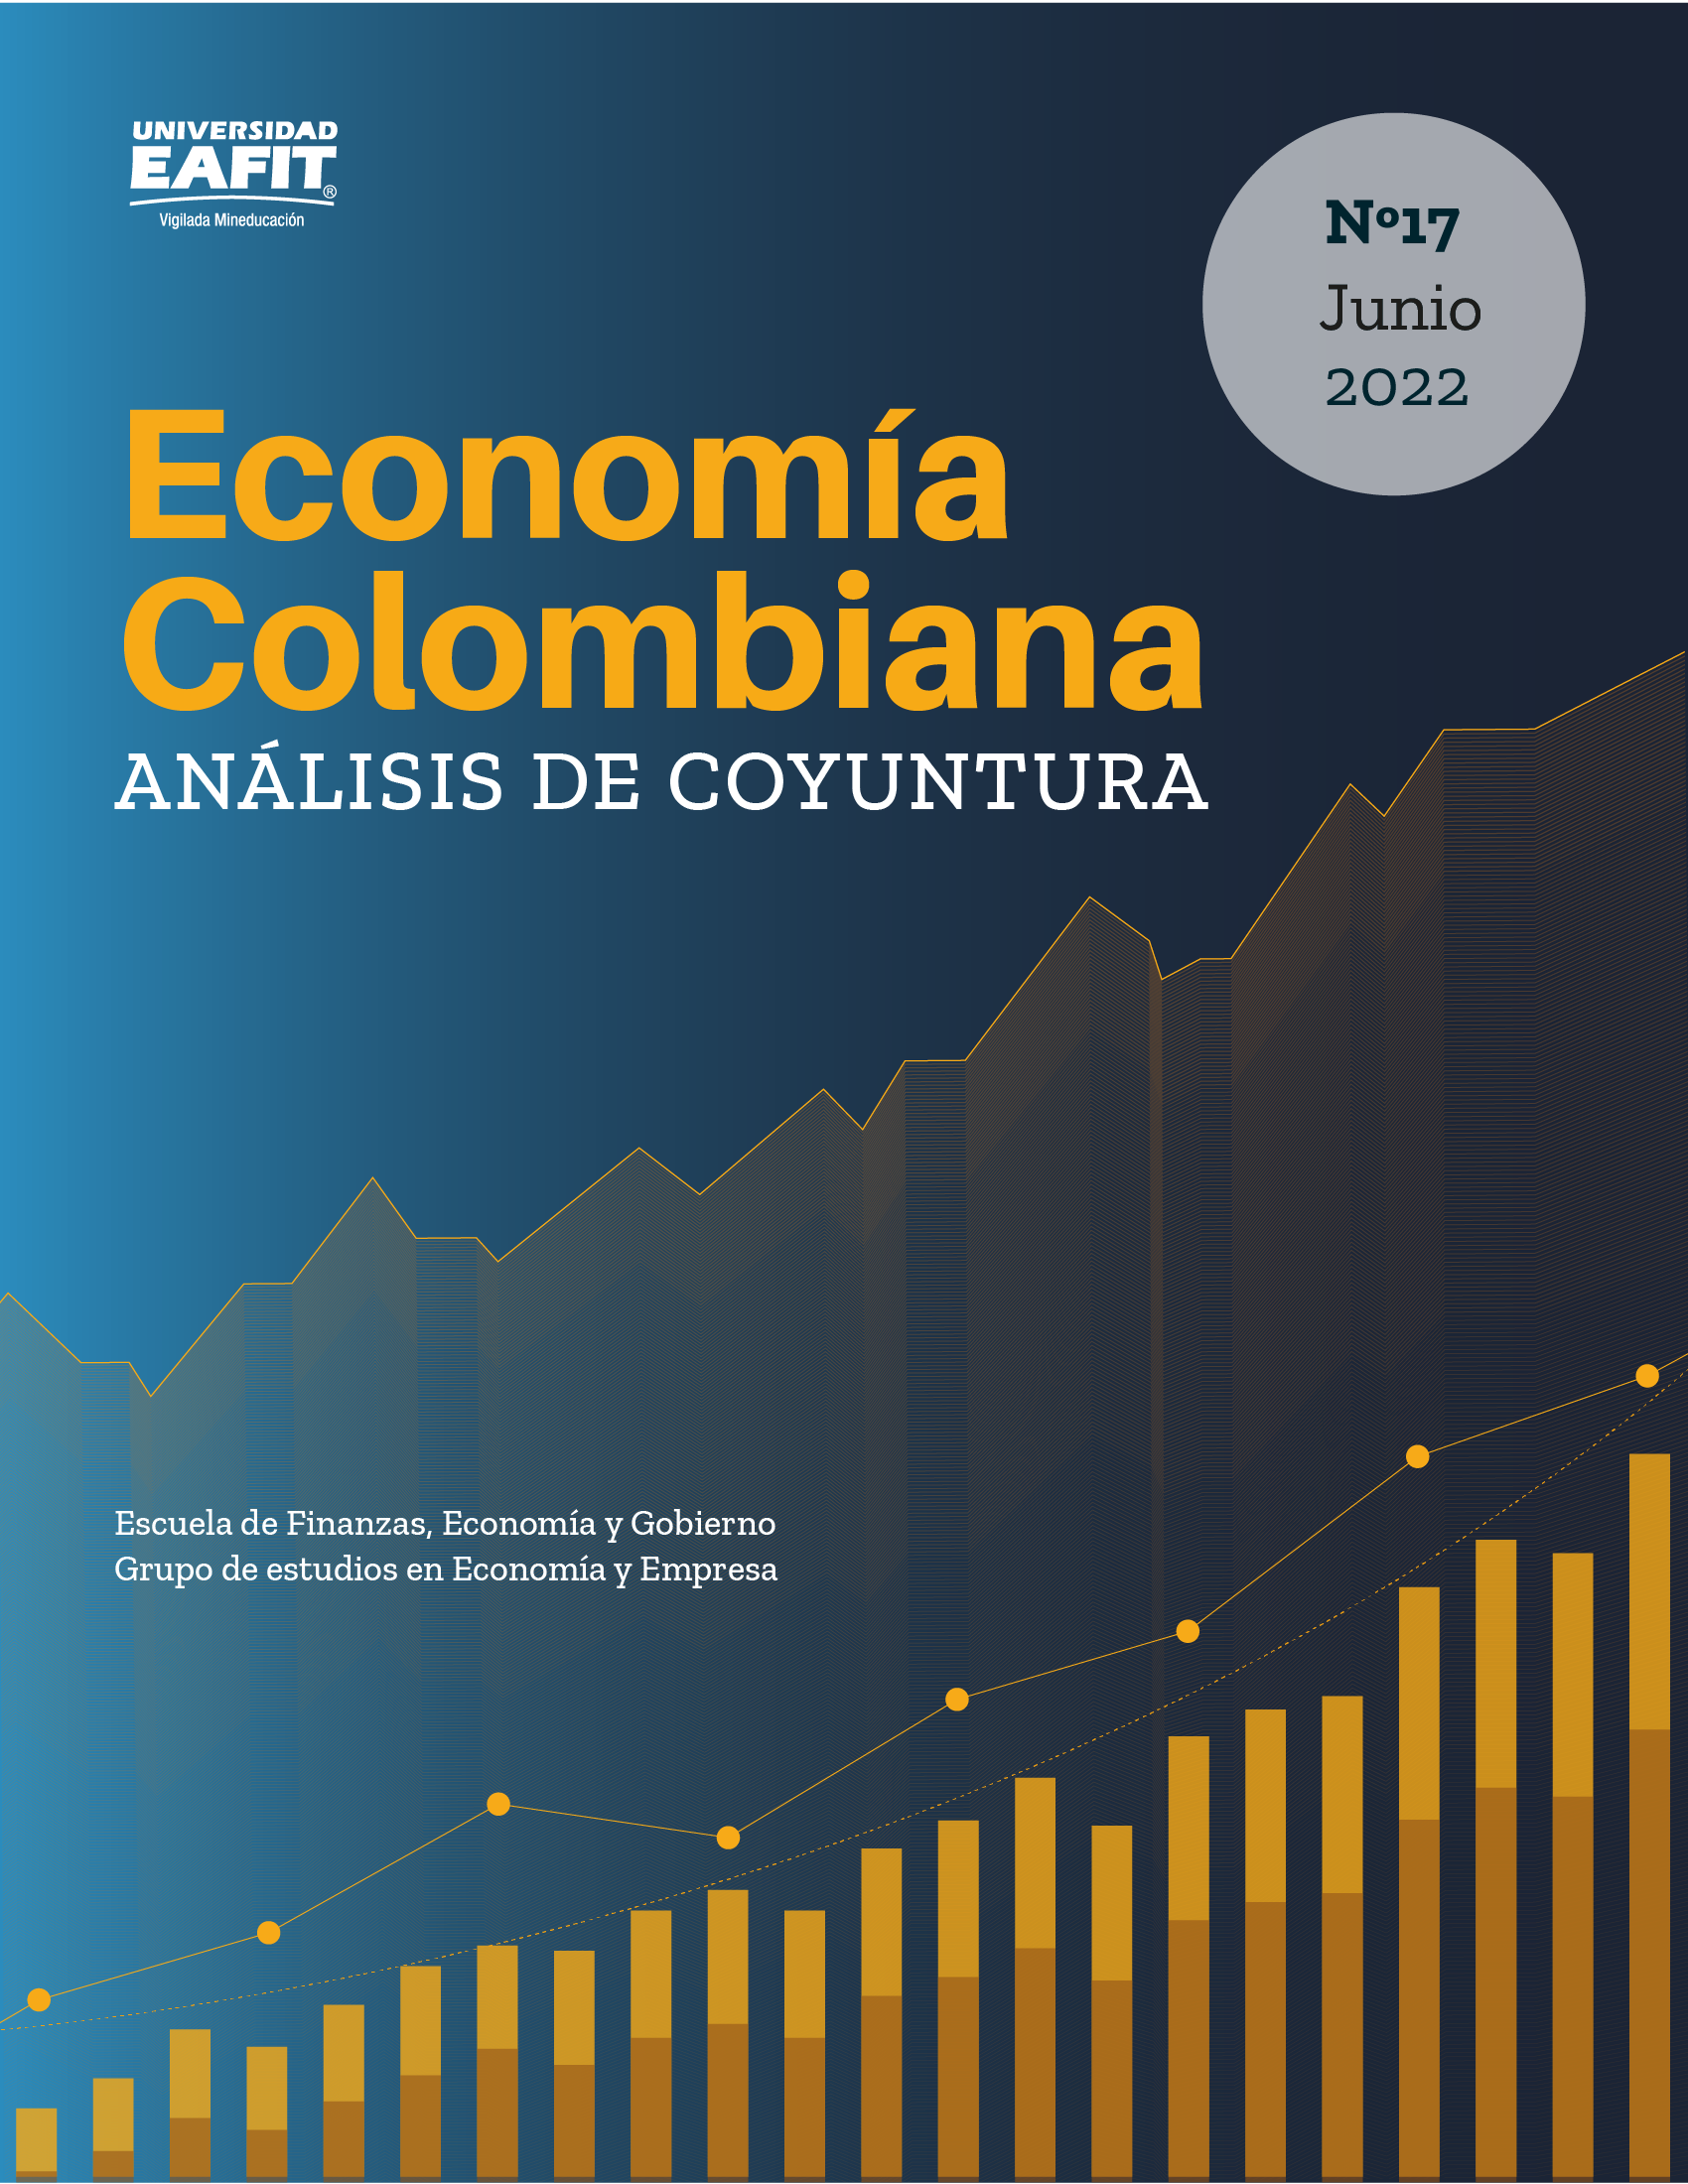 Informes de coyuntura - Coyuntura Económica - Universidad EAFIT